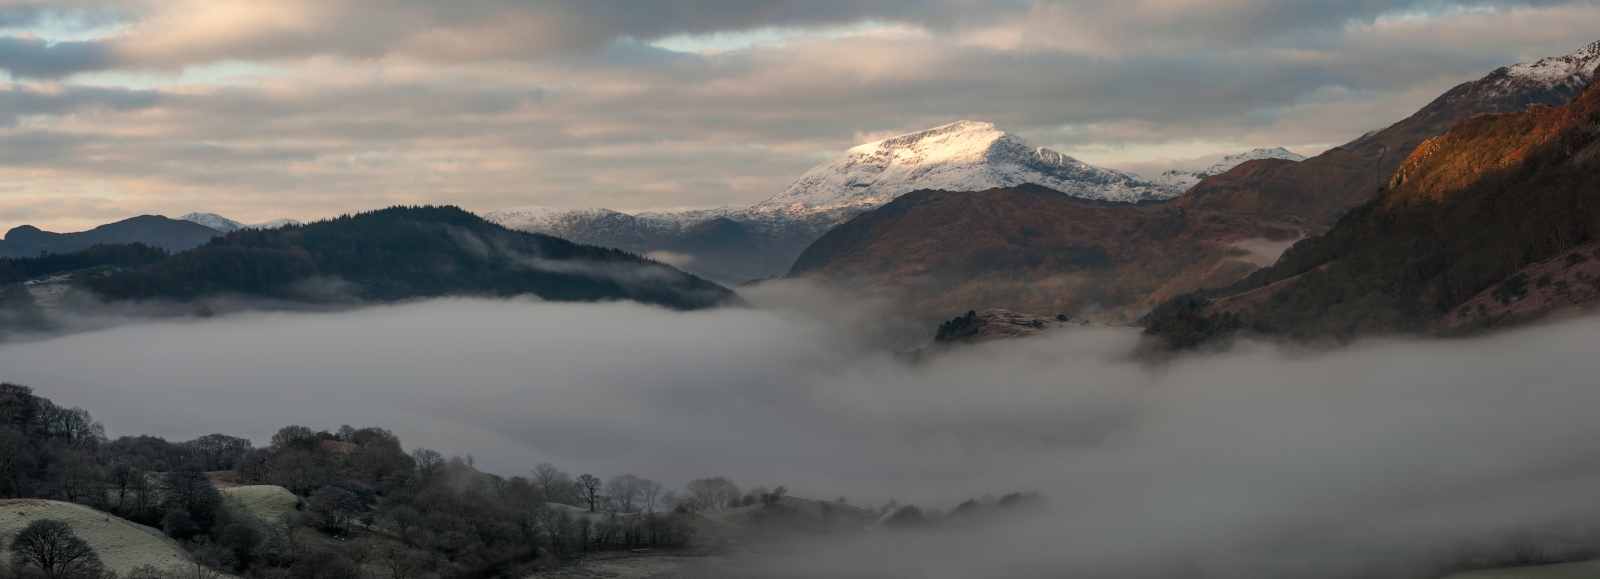 LLyn Gwynant Snowdonia Wales landscape photography at Winter/Welsh Winter at Llyn Gwynant landscape photography prints